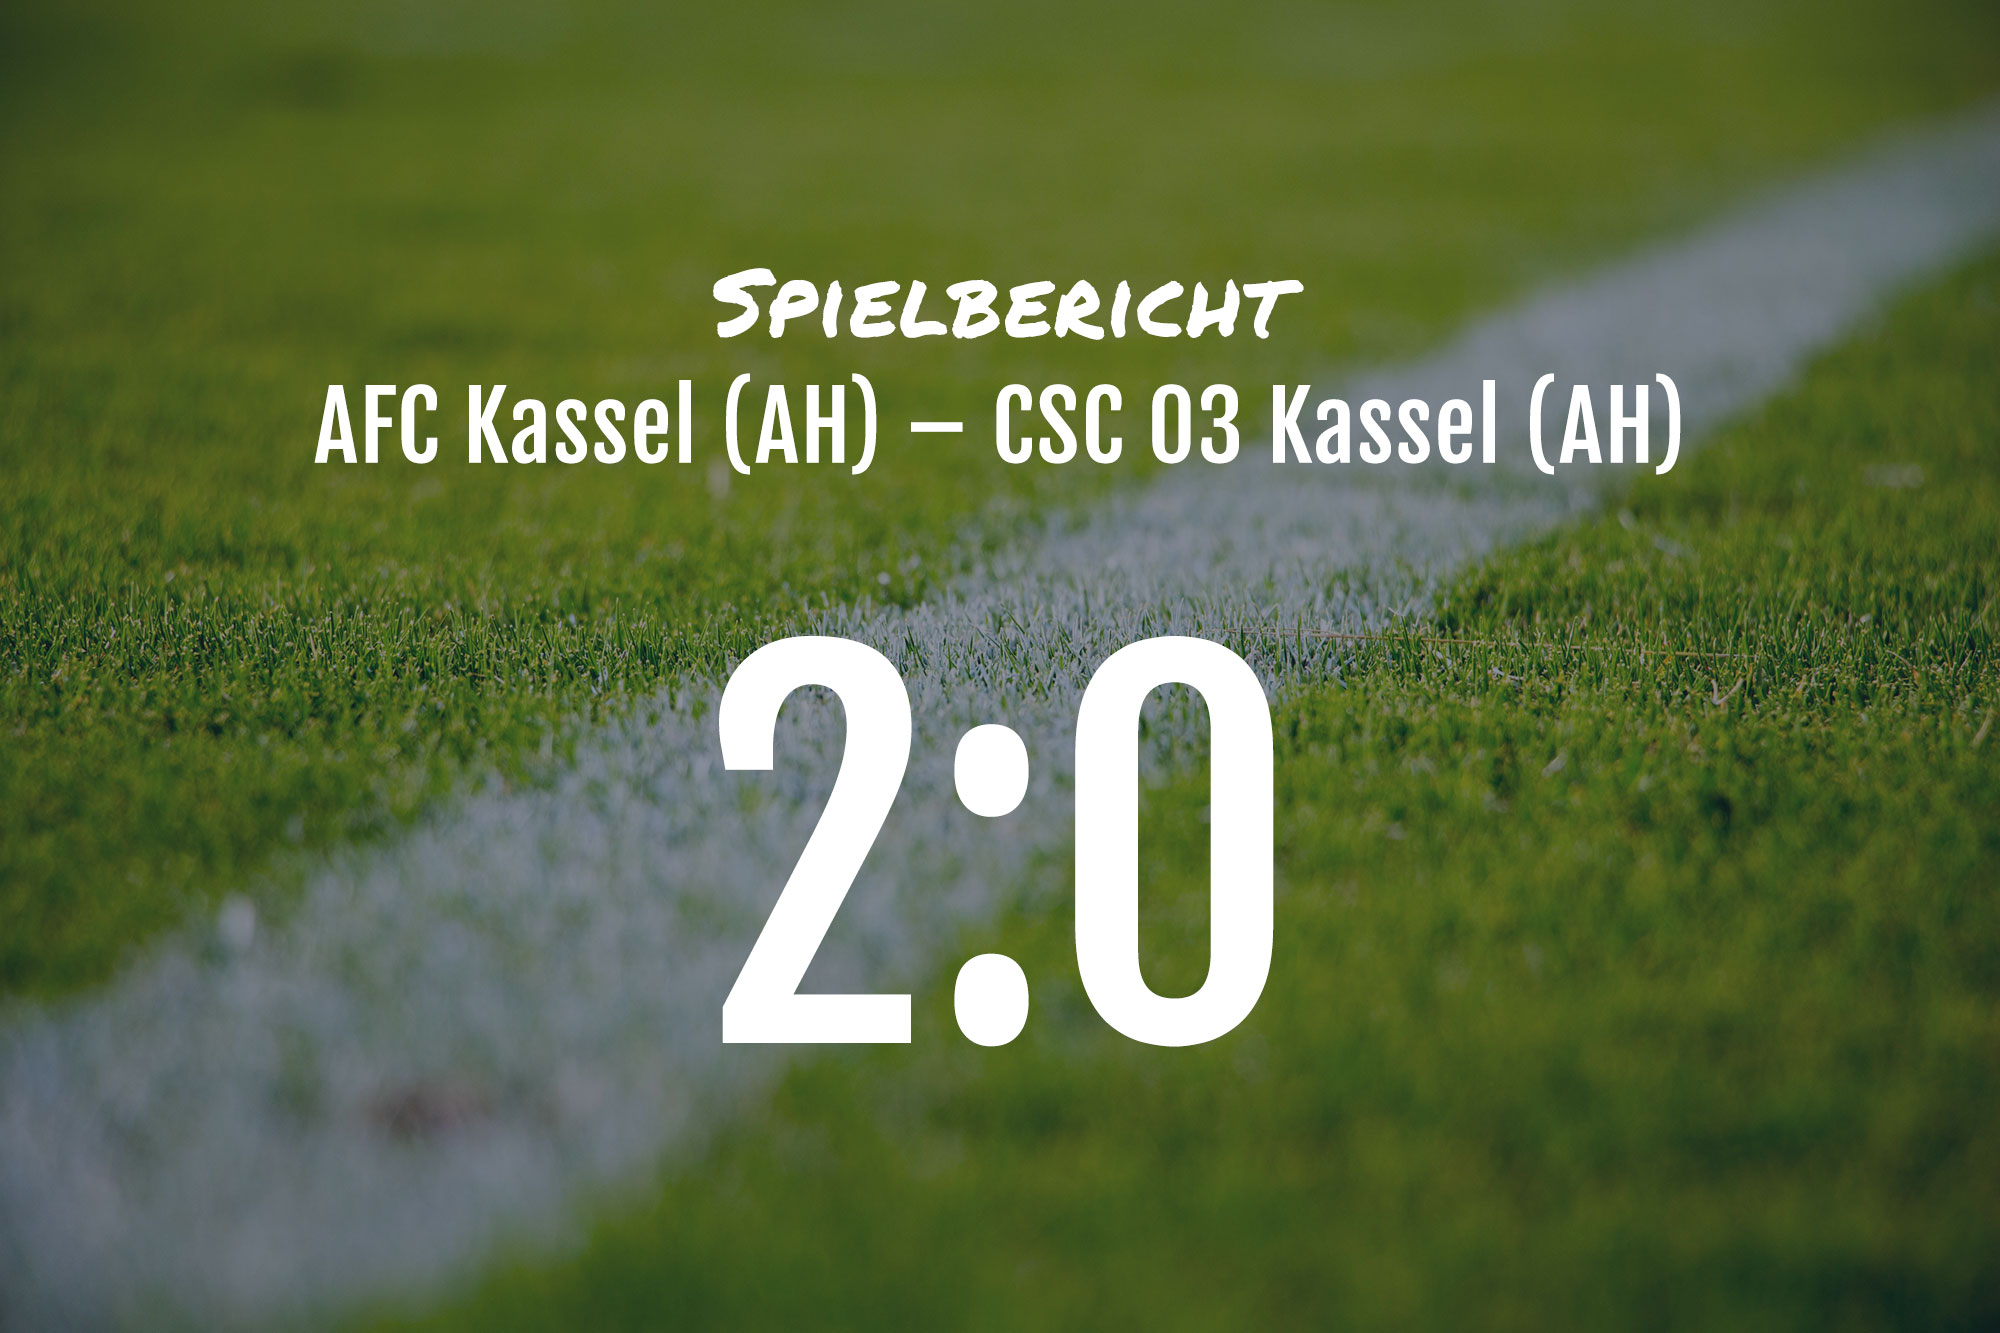 Spielbericht: AFC Kassel (Alte Herren) – CSC 03 Kassel (Alte Herren) 2:0